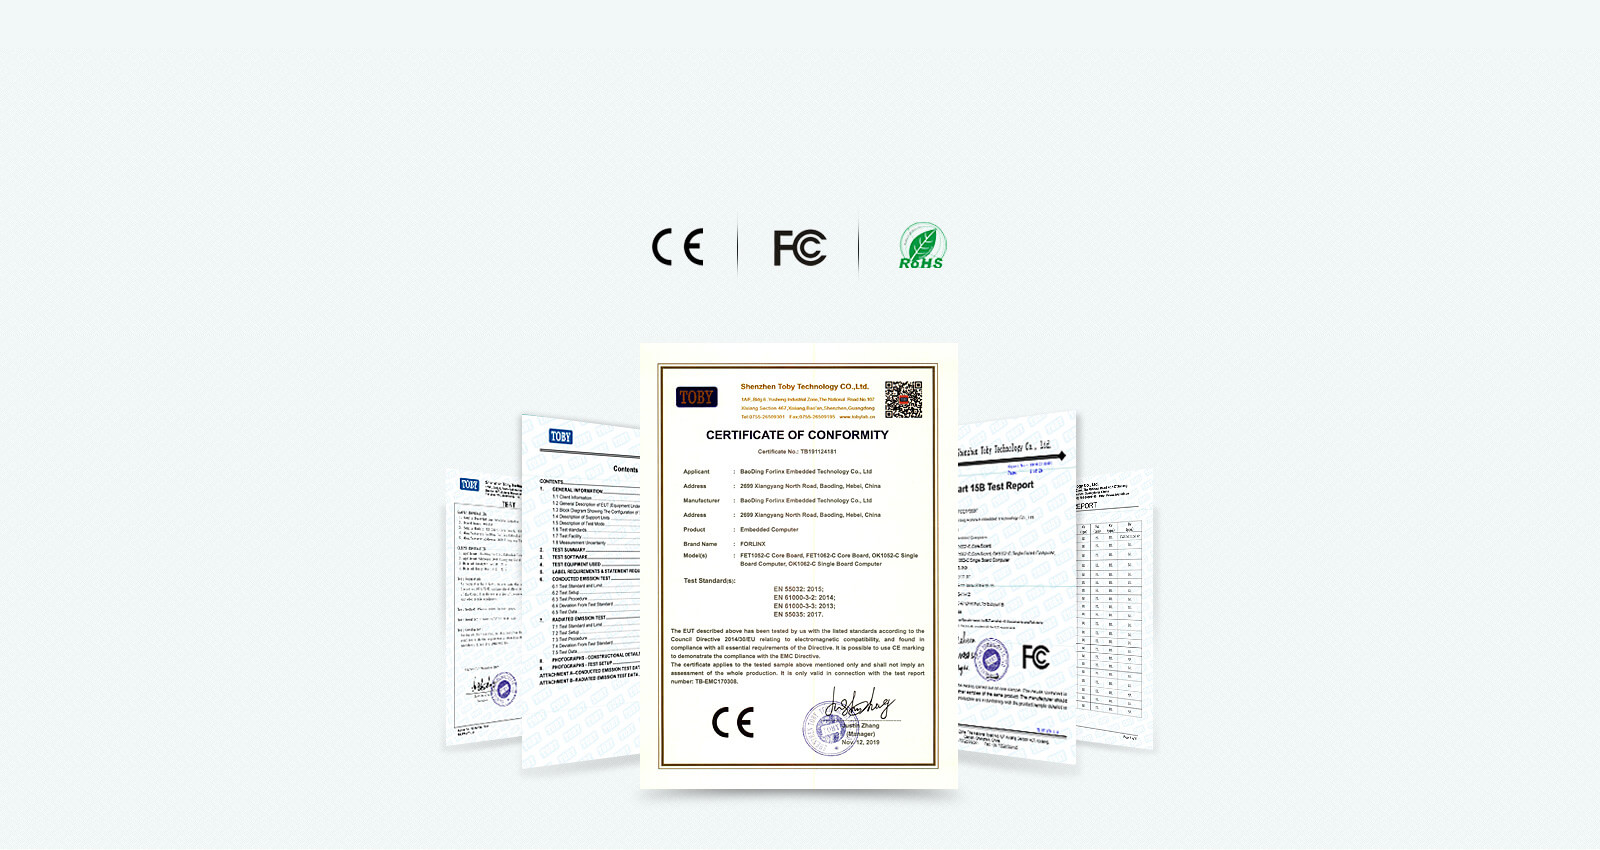 FET1052-C core board Multiple certifications